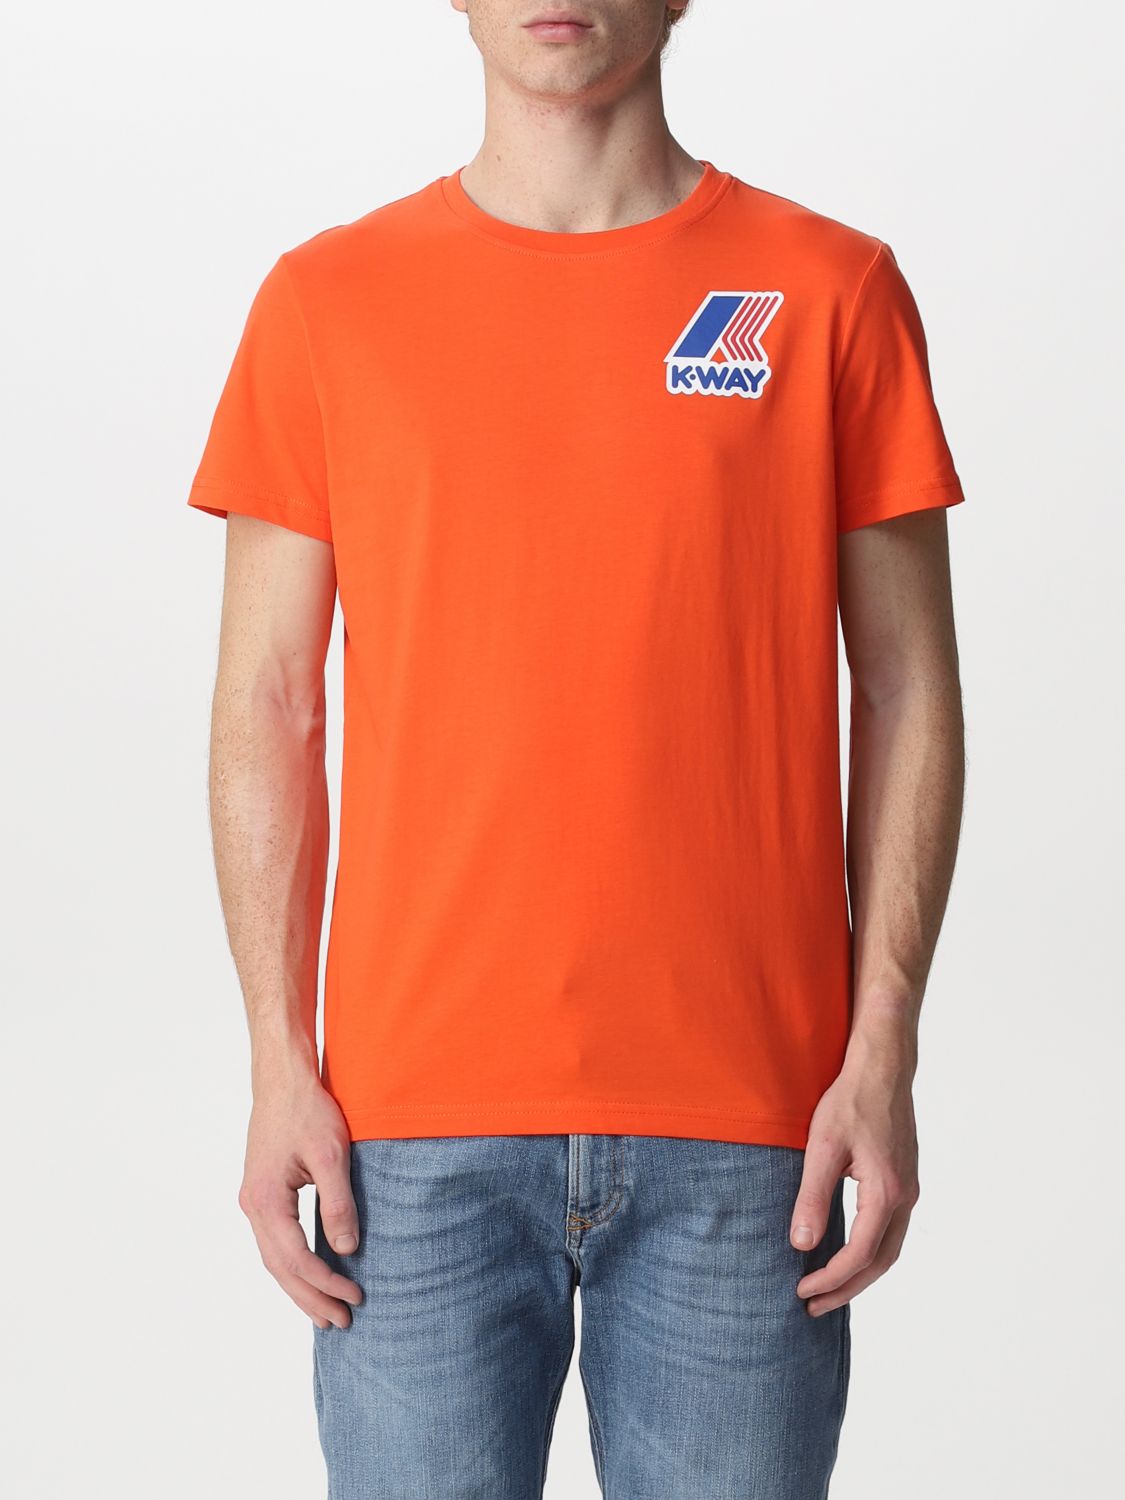 Tシャツ K-Way: Tシャツ メンズ K-way オレンジ 1